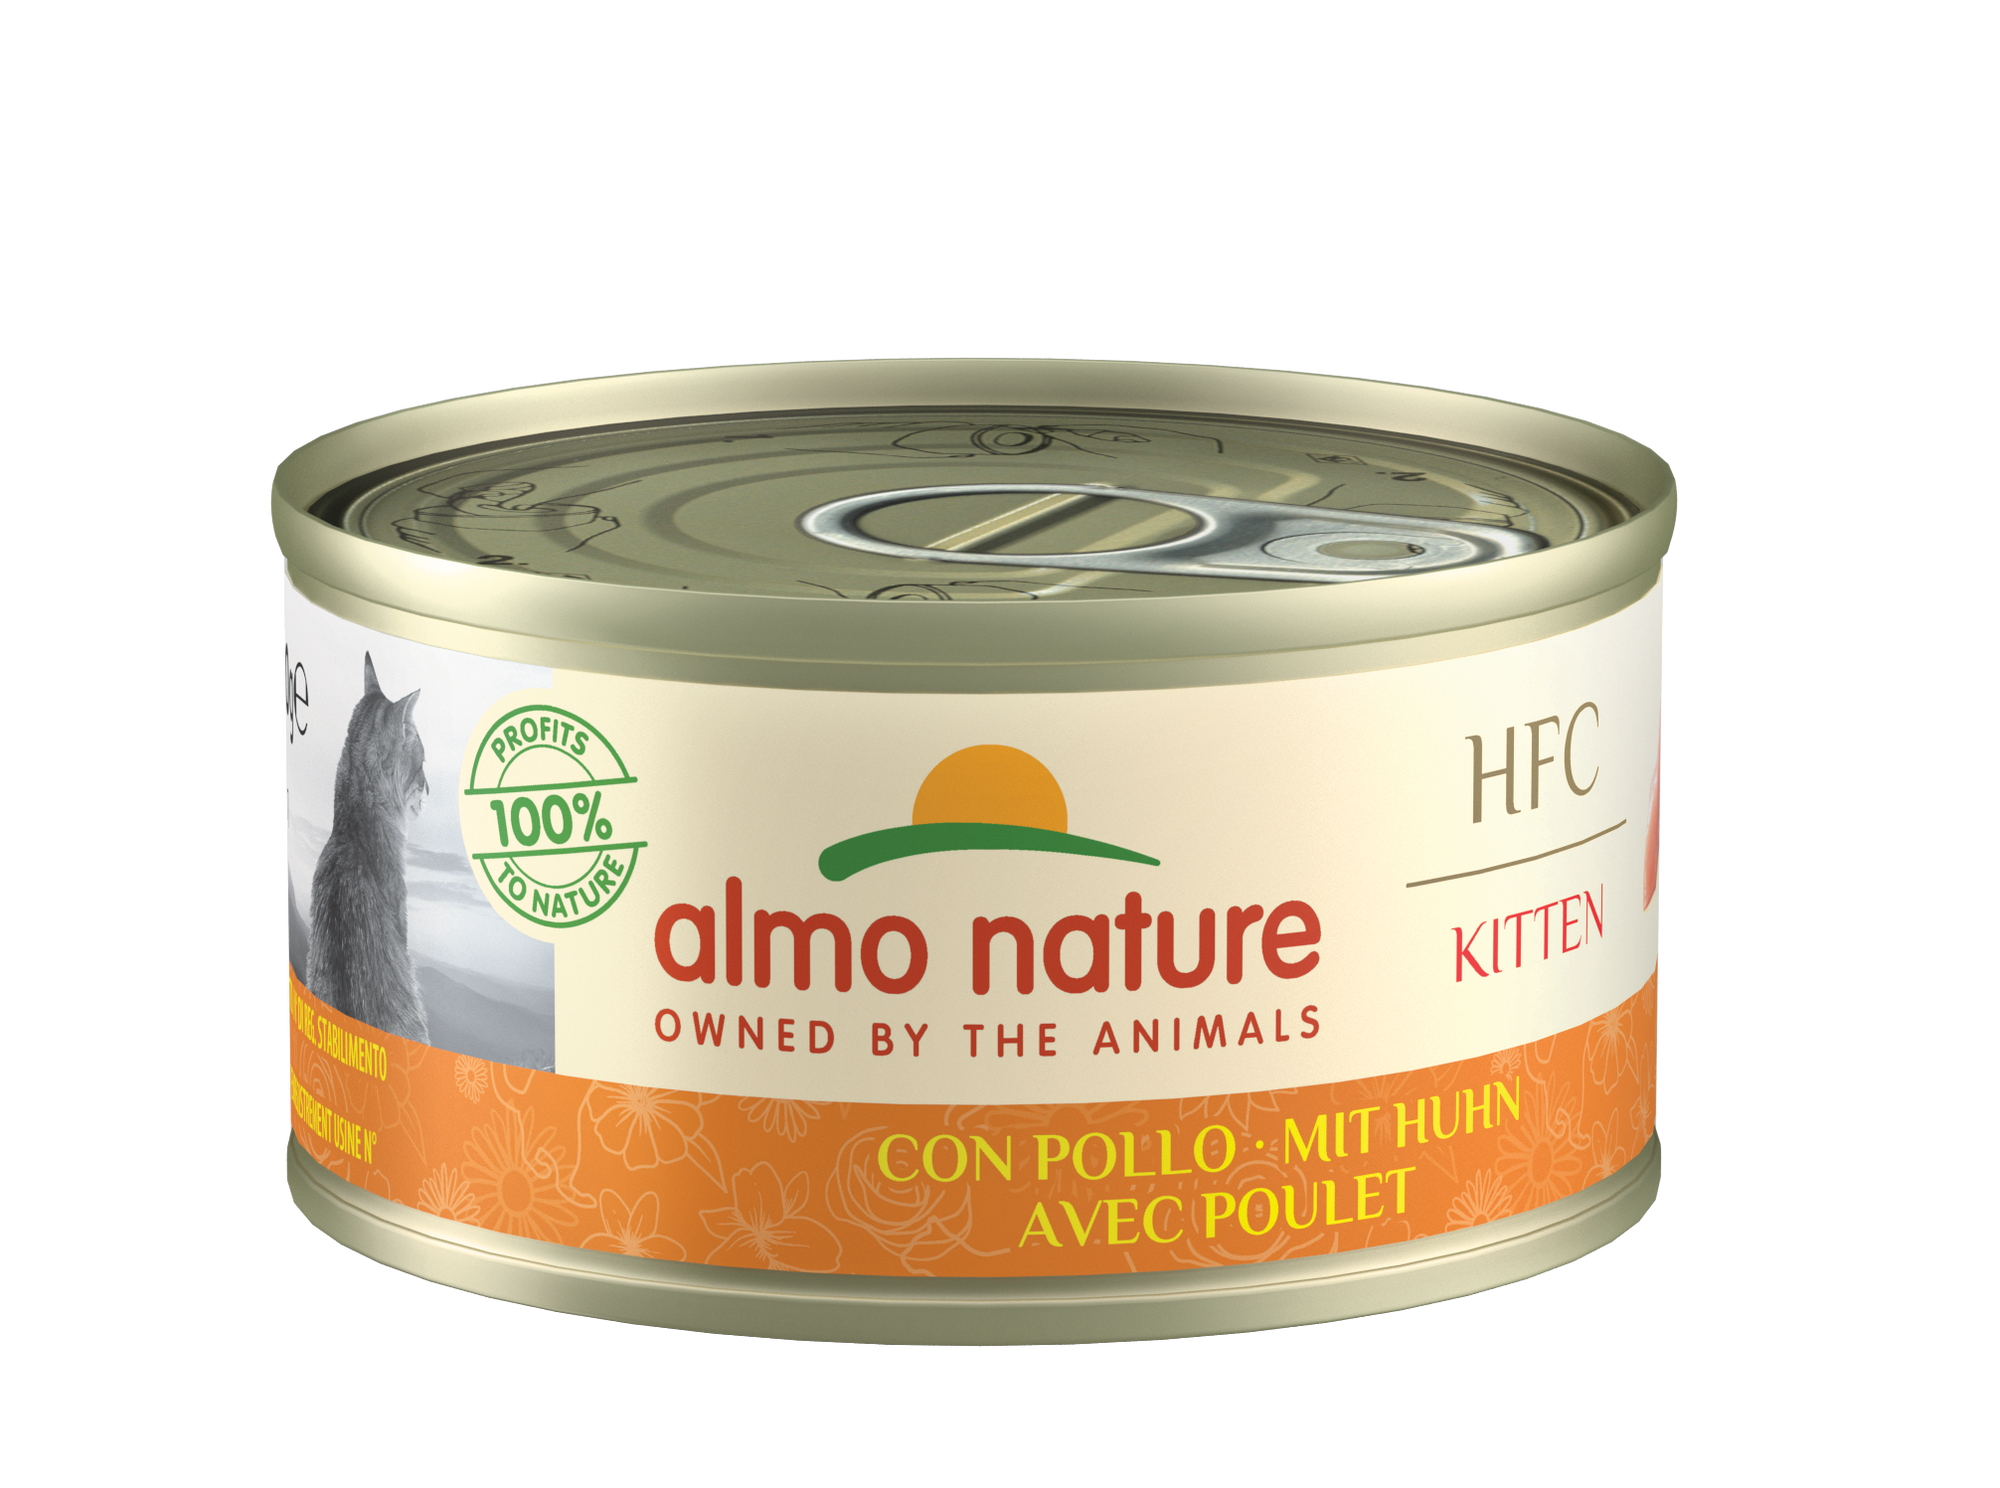 Artikel mit dem Namen Almo Nature HFC - Kitten Huhn im Shop von zoo.de , dem Onlineshop für nachhaltiges Hundefutter und Katzenfutter.